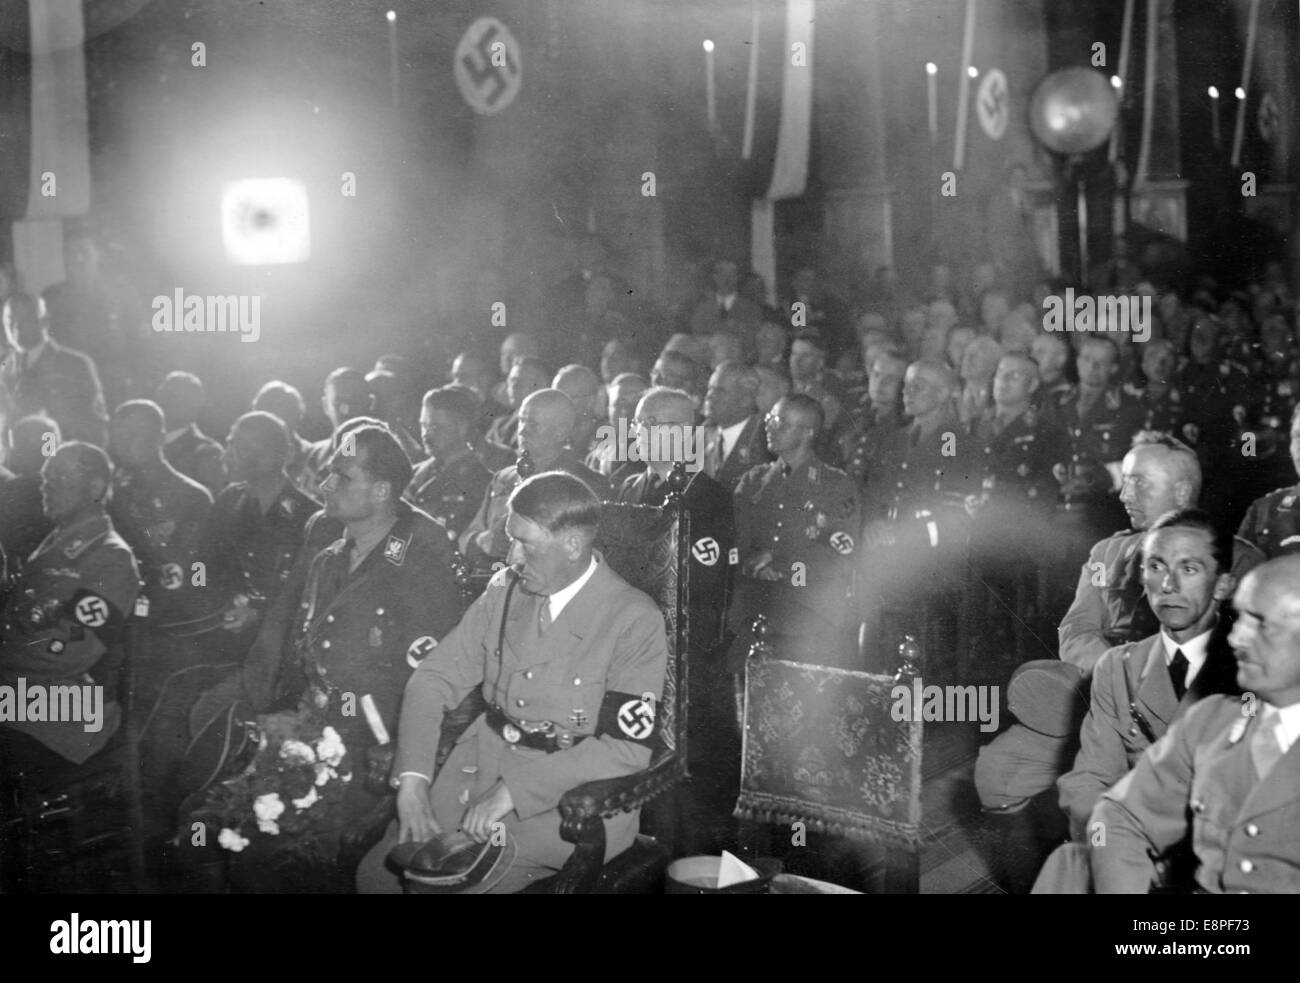 Rally di Norimberga 1933 a Norimberga, Germania - Adolf Hitler, Ministro del Reich Rudolf Hess (a sinistra di Hitler), Ministro del Reich di Propaganda Joseph Goebbels (2-R) e editore di 'Der Stuermer' (l'attaccante) Julius Streicher (R) durante un discorso del sindaco di Norimberga Willy Liebel presso un ricevimento nella sala di Norimberga. (Difetti di qualità dovuti alla copia storica dell'immagine) Fotoarchiv für Zeitgeschichtee - NESSUN SERVIZIO DI CABLAGGIO – Foto Stock